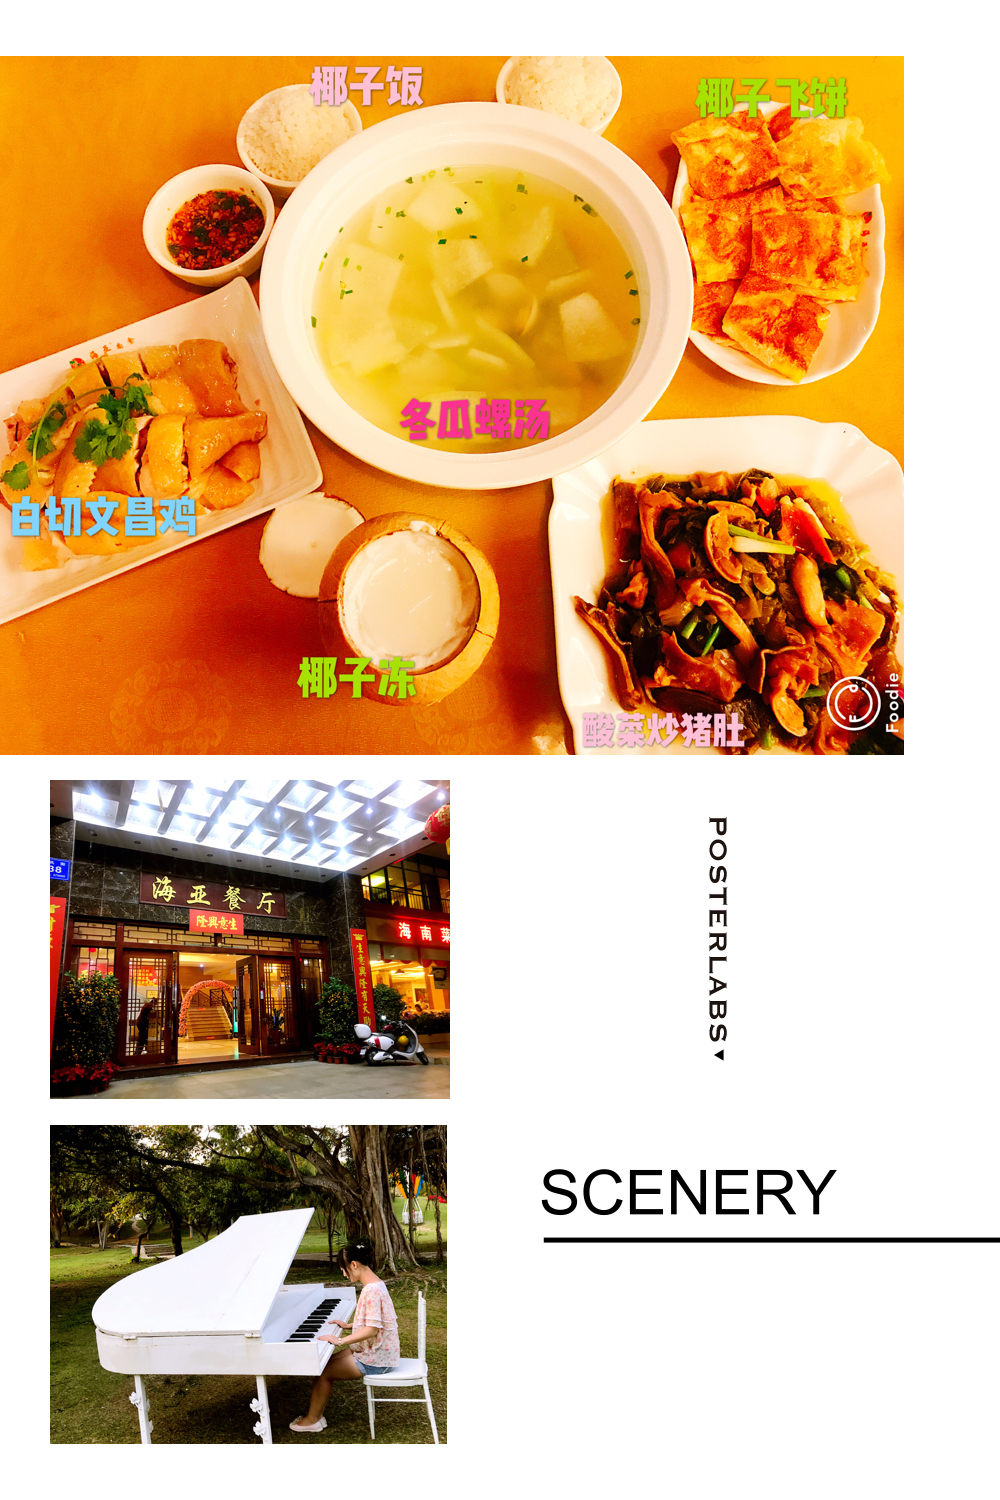 三亚海亚餐厅菜单图片